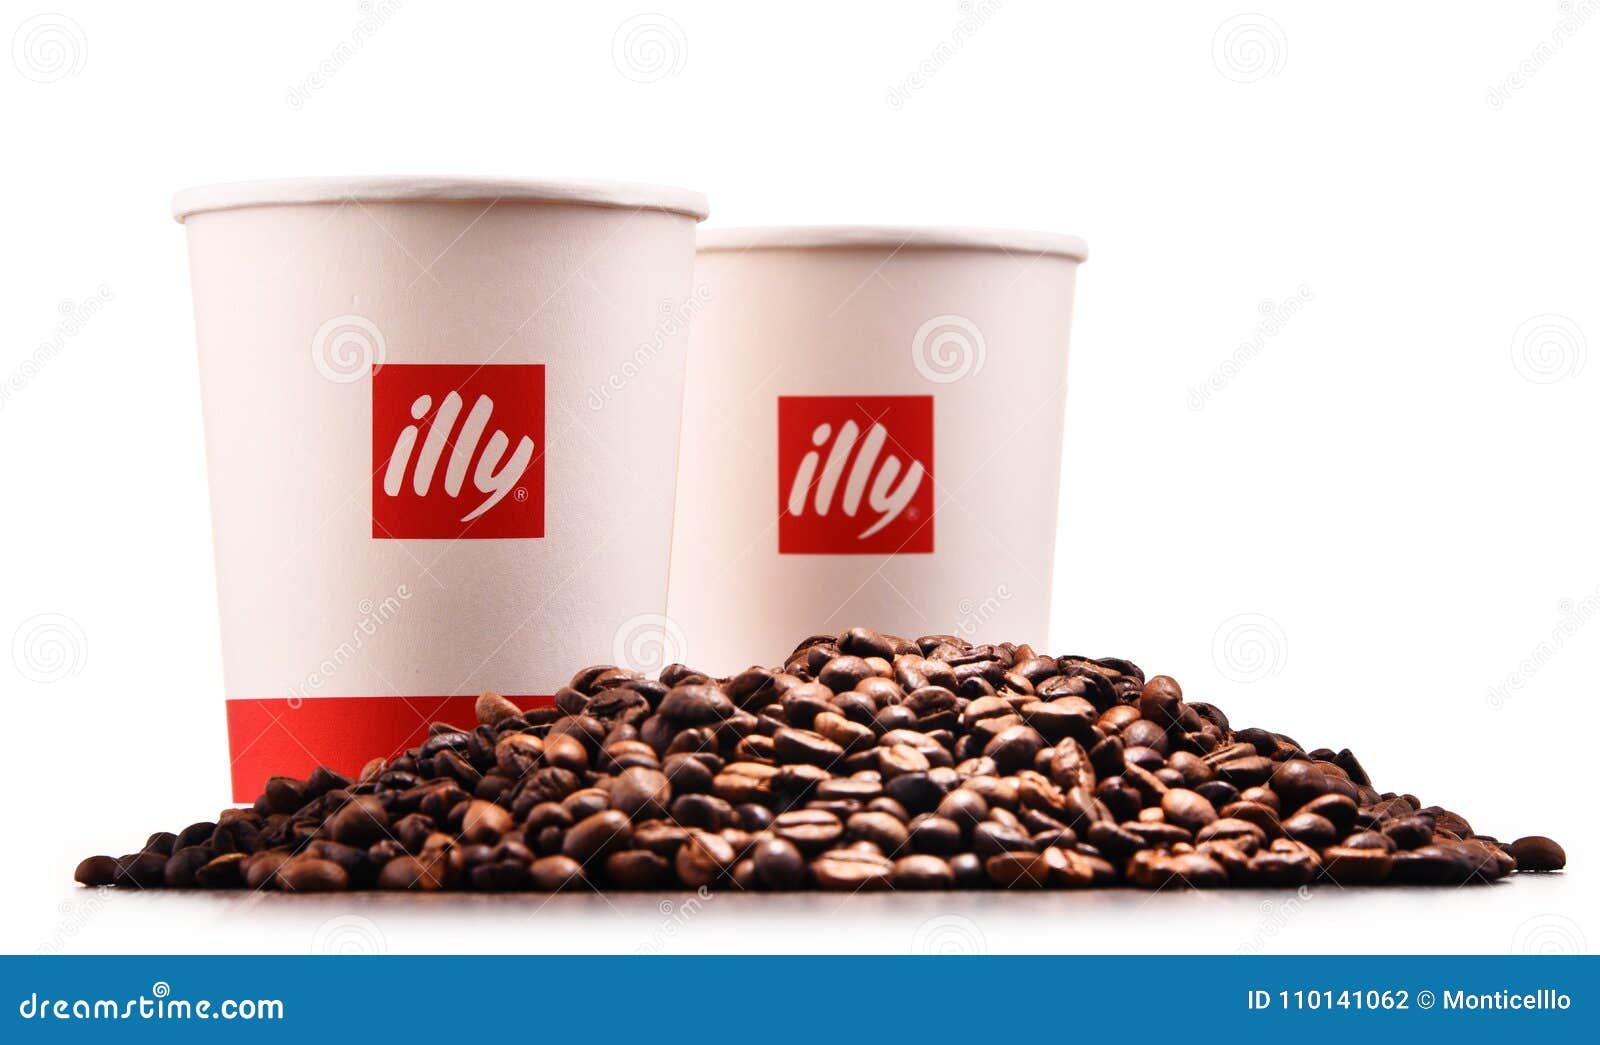 illy - café en grain - India